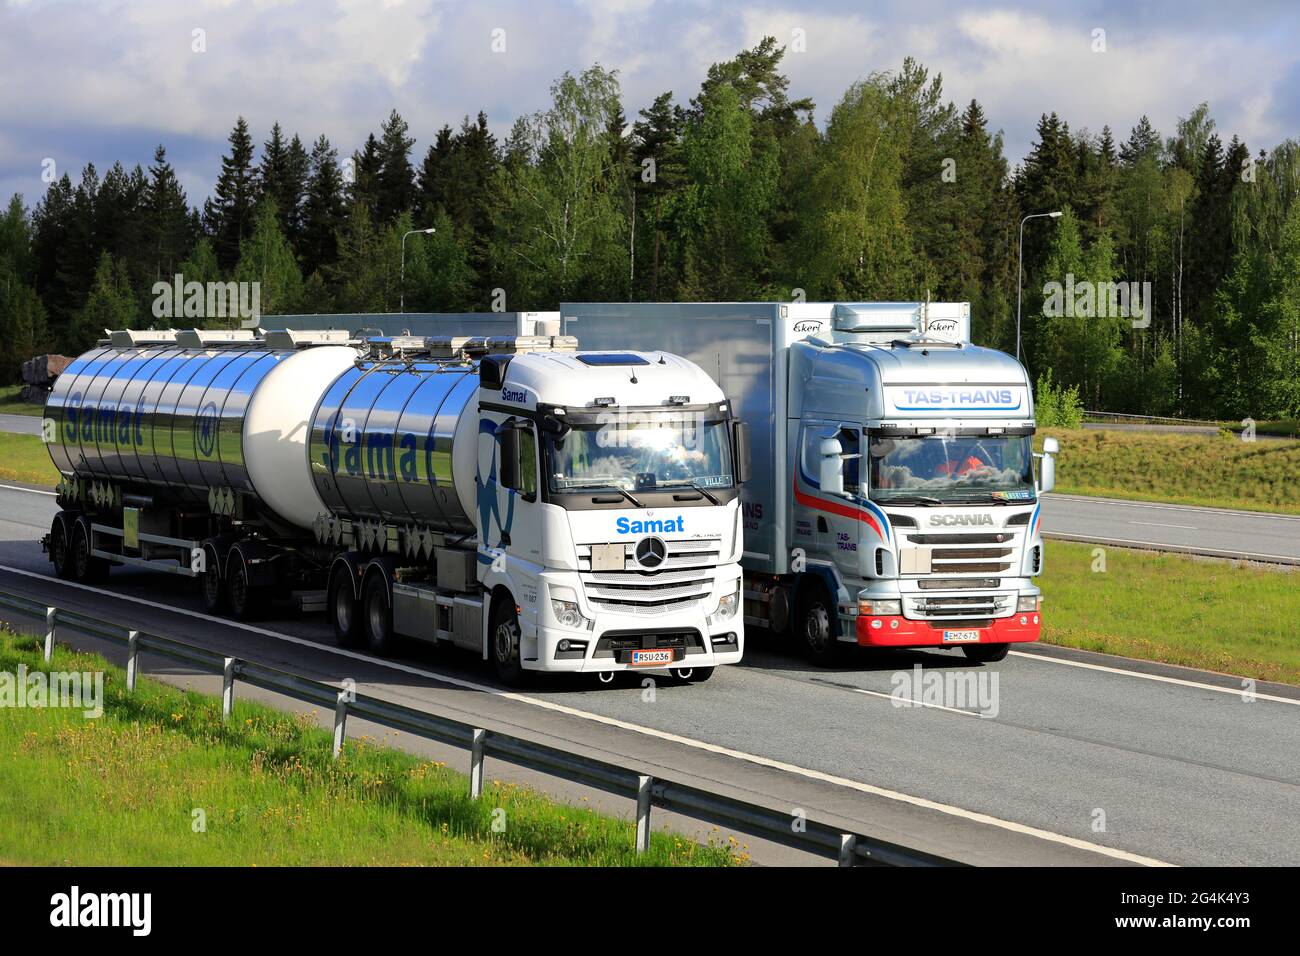 Der Spediteur Scania überholt Mercedes-Benz Tankwagen auf der Autobahn. LKW mit schwerer Ladung können bergauf viel langsamer sein. Salo, Finnland, 28. Mai 21 Stockfoto